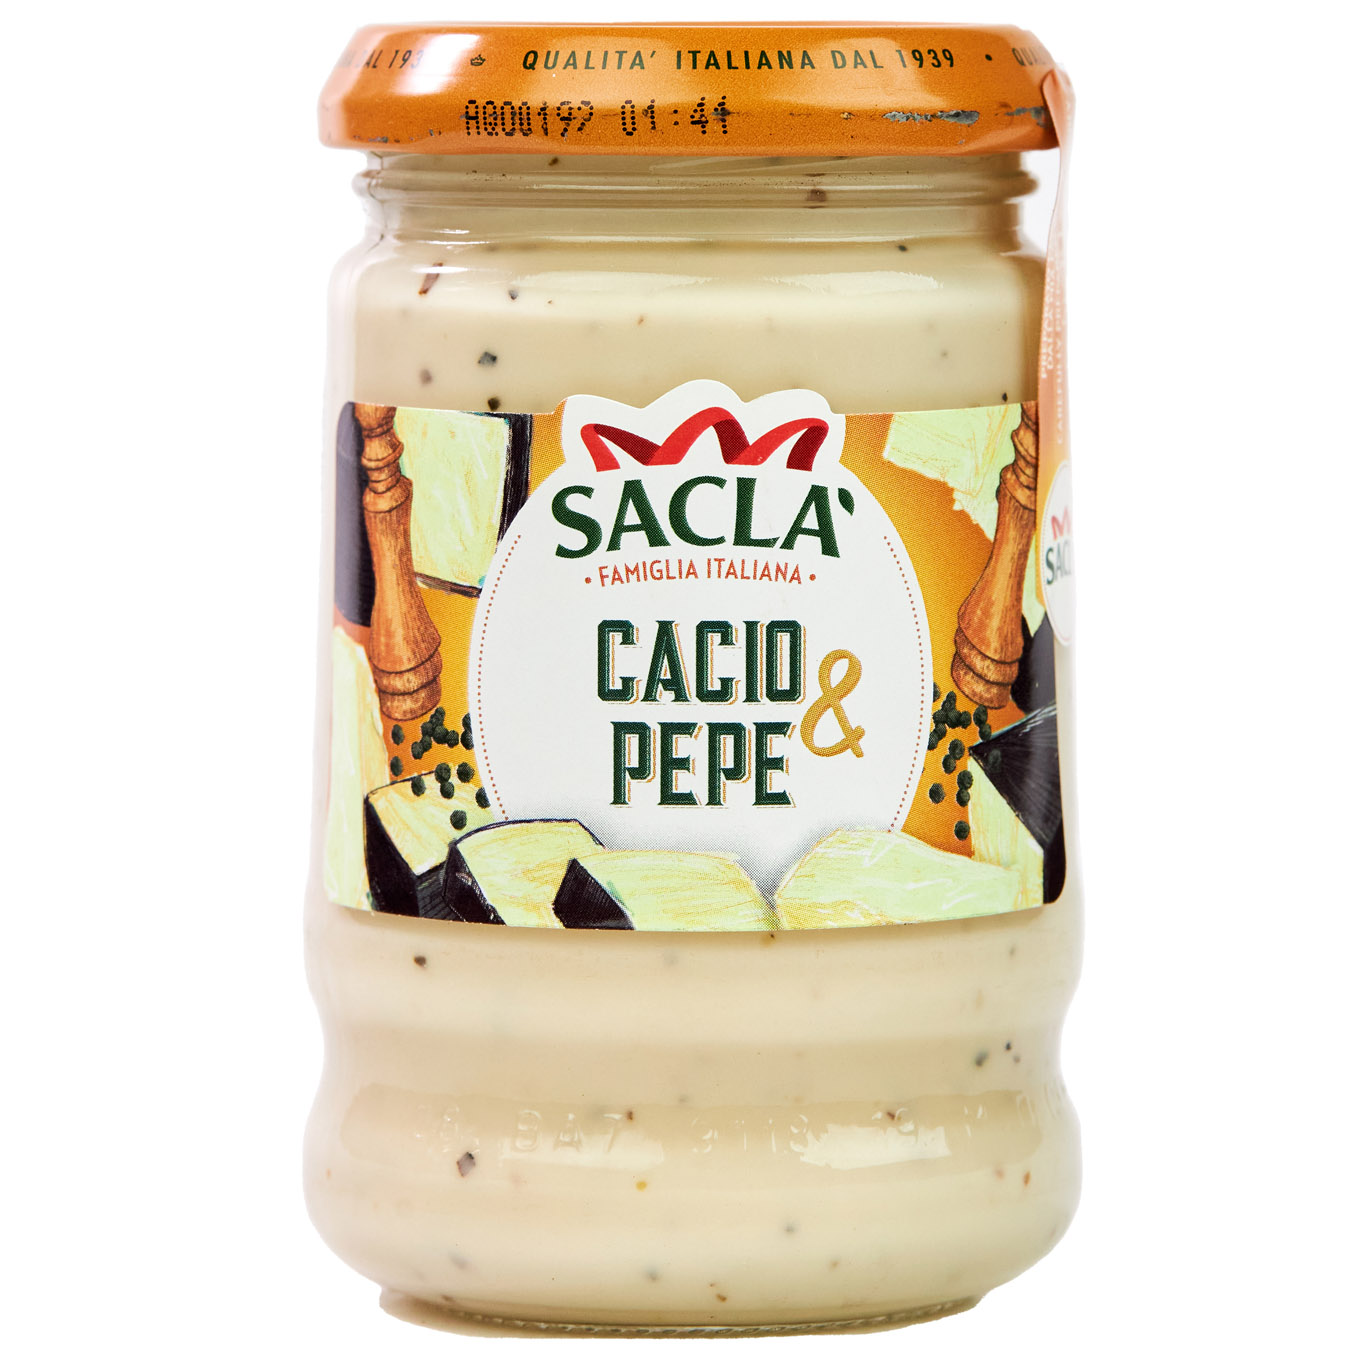 Sacla Pasta Cheese Sauce 190g